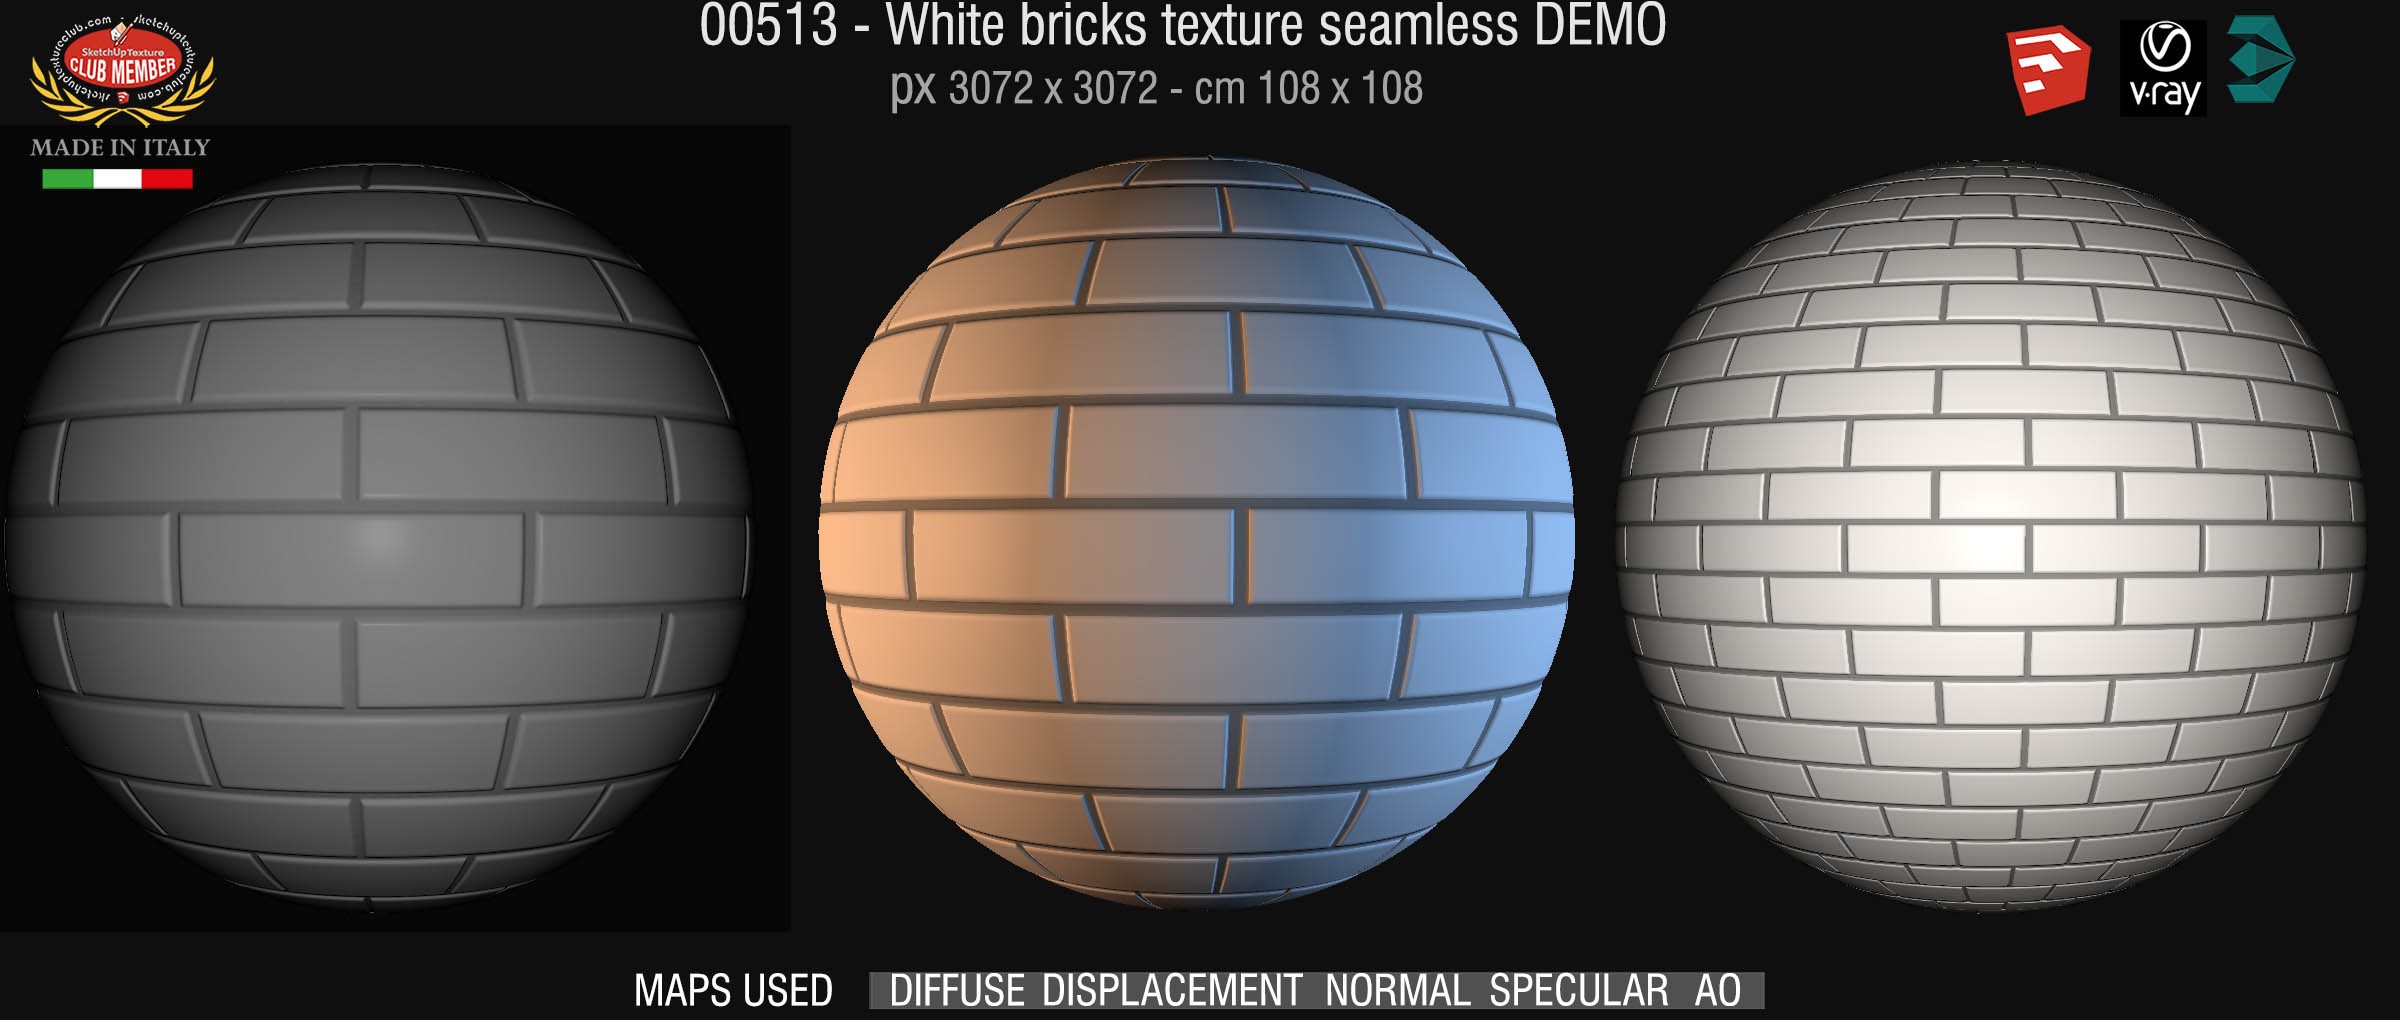 00513 White bricks texture seamless + maps DEMO